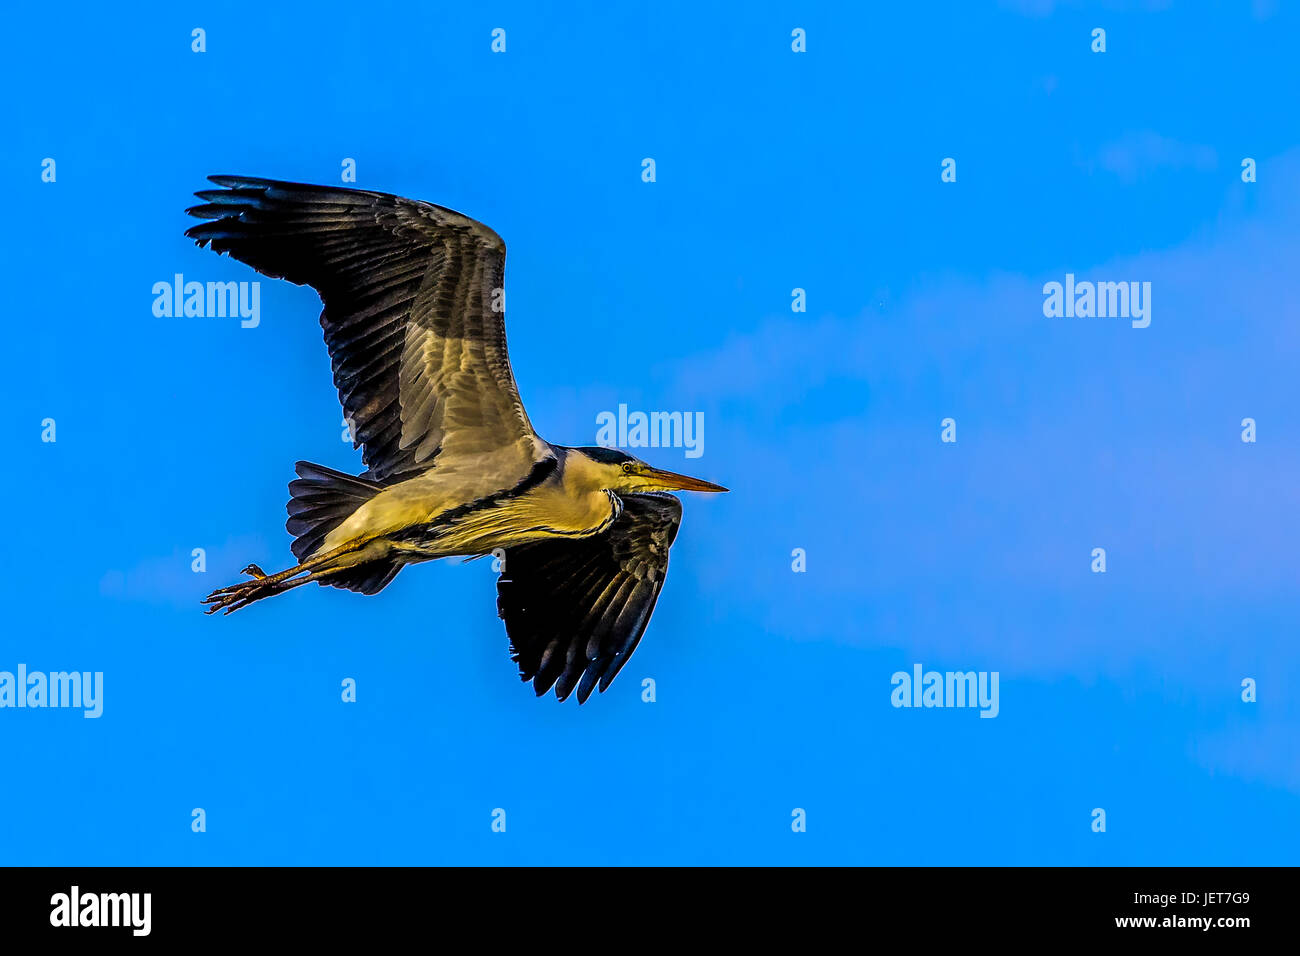 Immagine a colori di un singolo isolato garzetta / heron in volo con ali aperte ampia diffusione sotto il cielo blu in un colorato stile della pittura Foto Stock